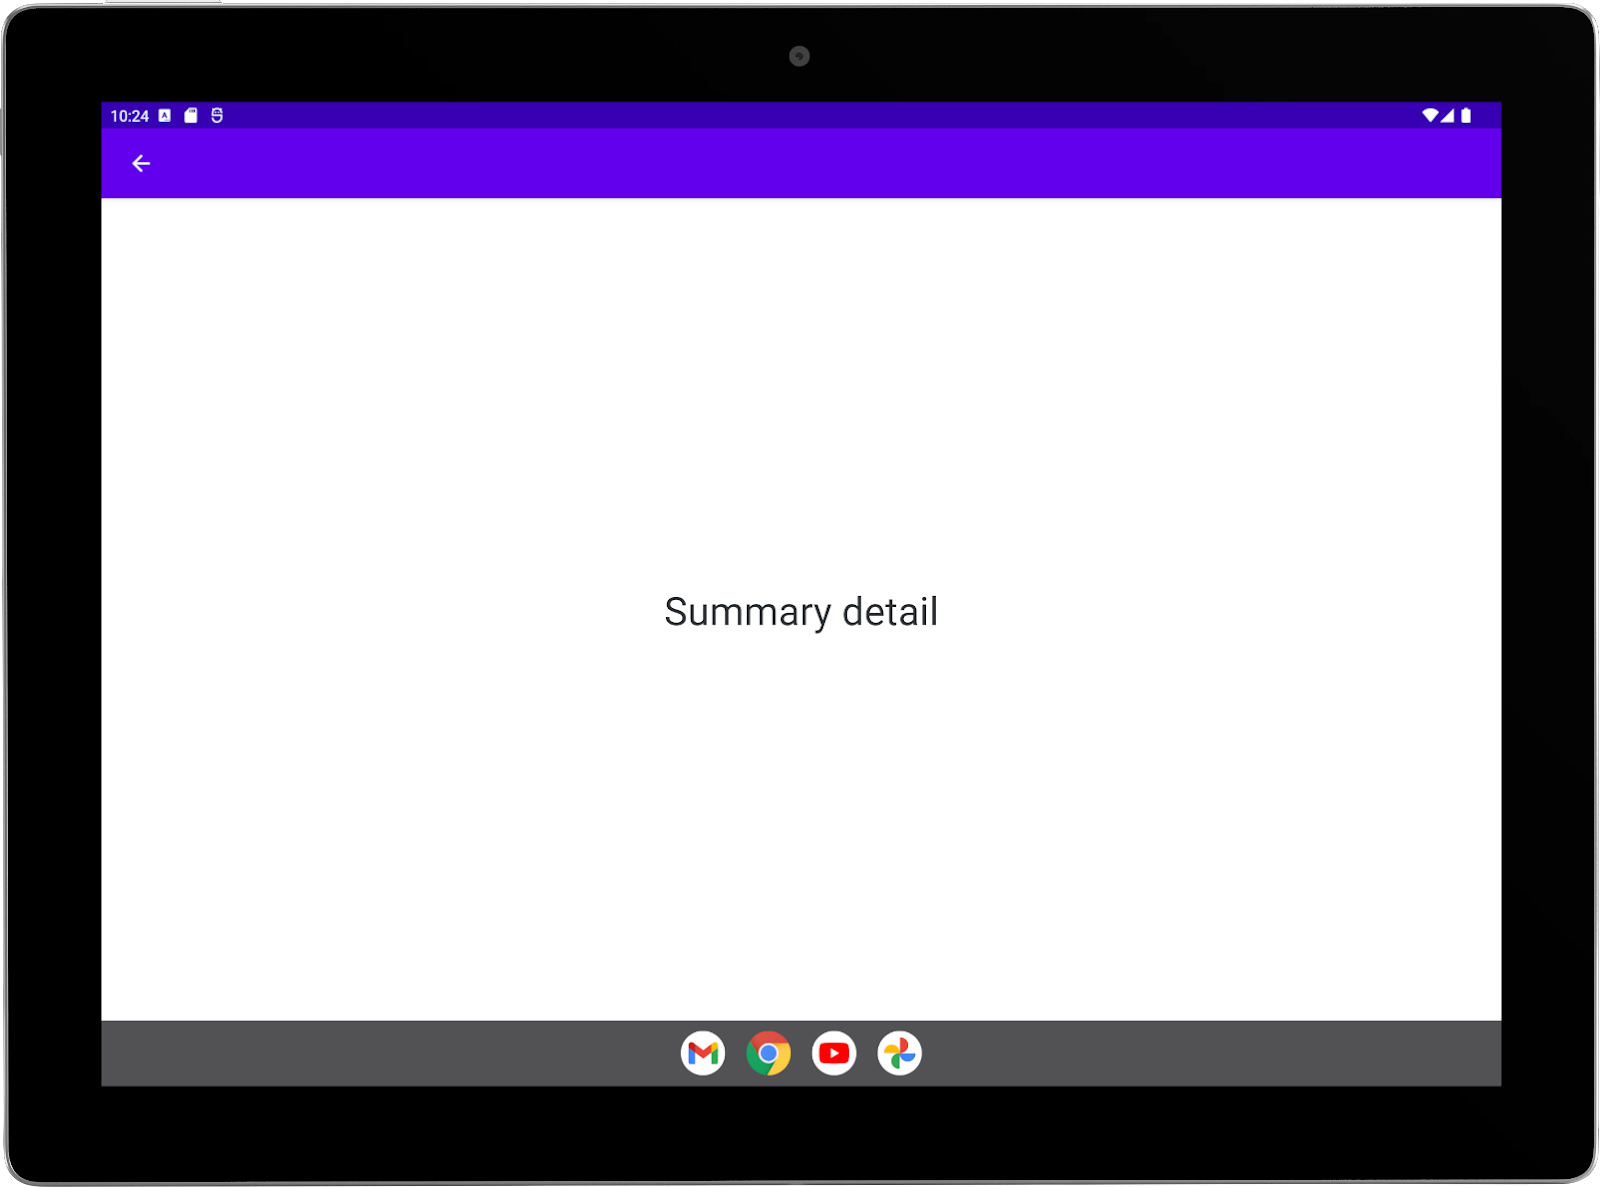 Tablet grande con la app de ejemplo ejecutándose en orientación horizontal. Pantalla completa de la actividad de resumen.